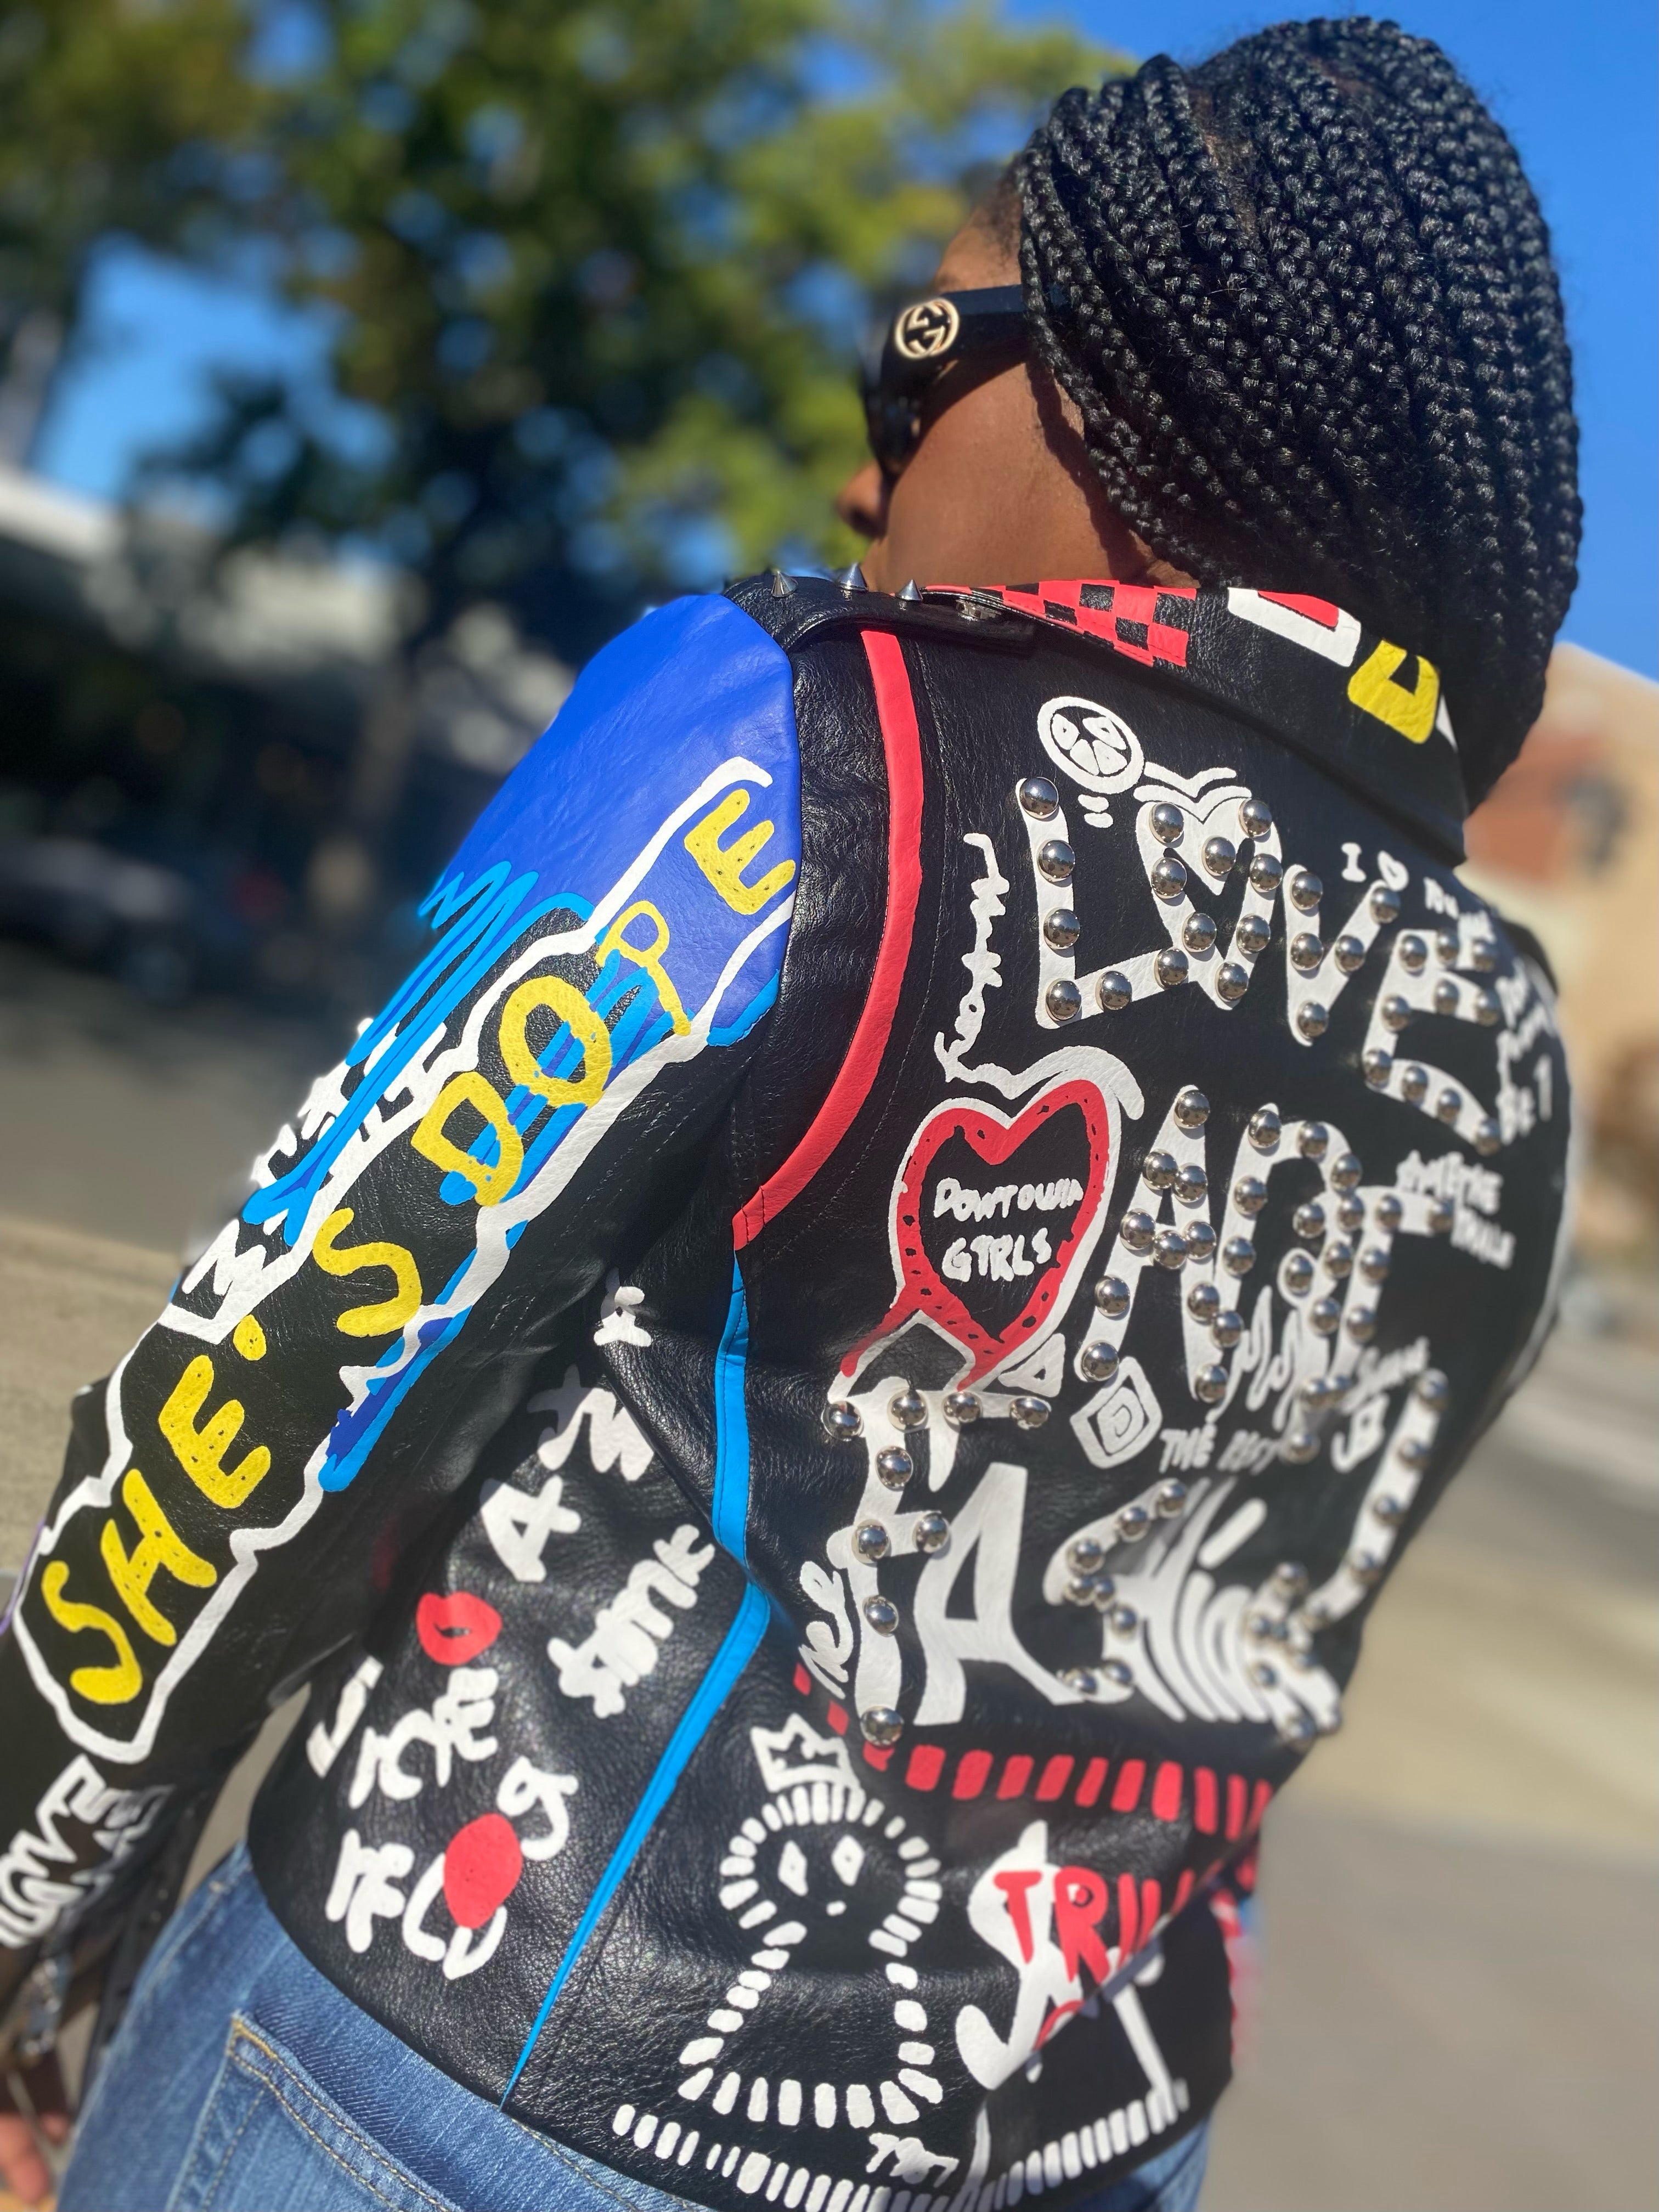 "She's Dope" Graffiti Jacket